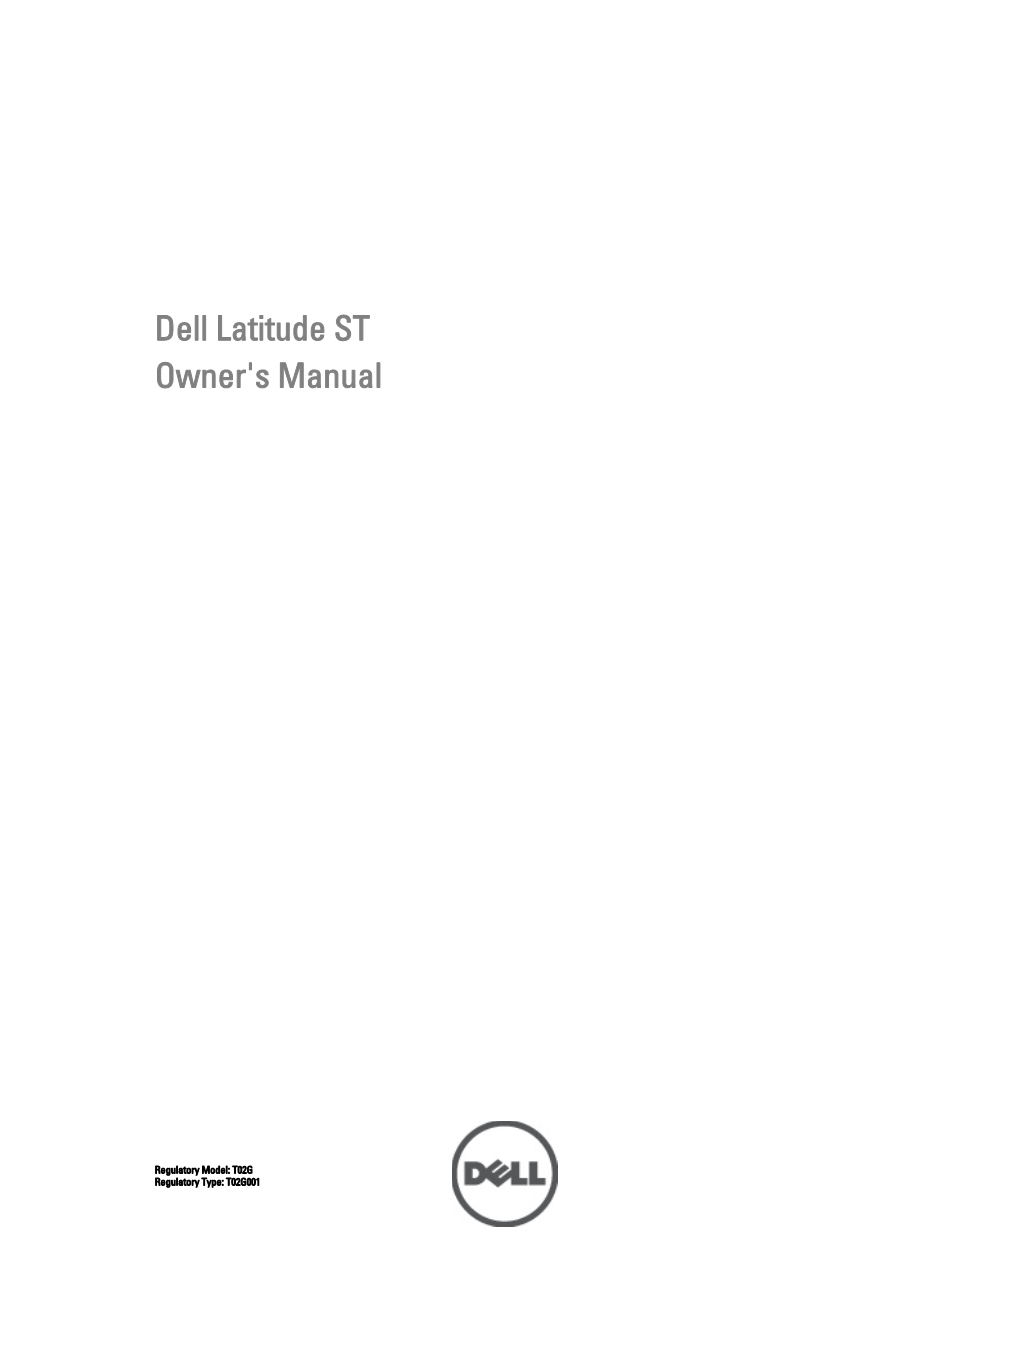 Dell Latitude ST Manual